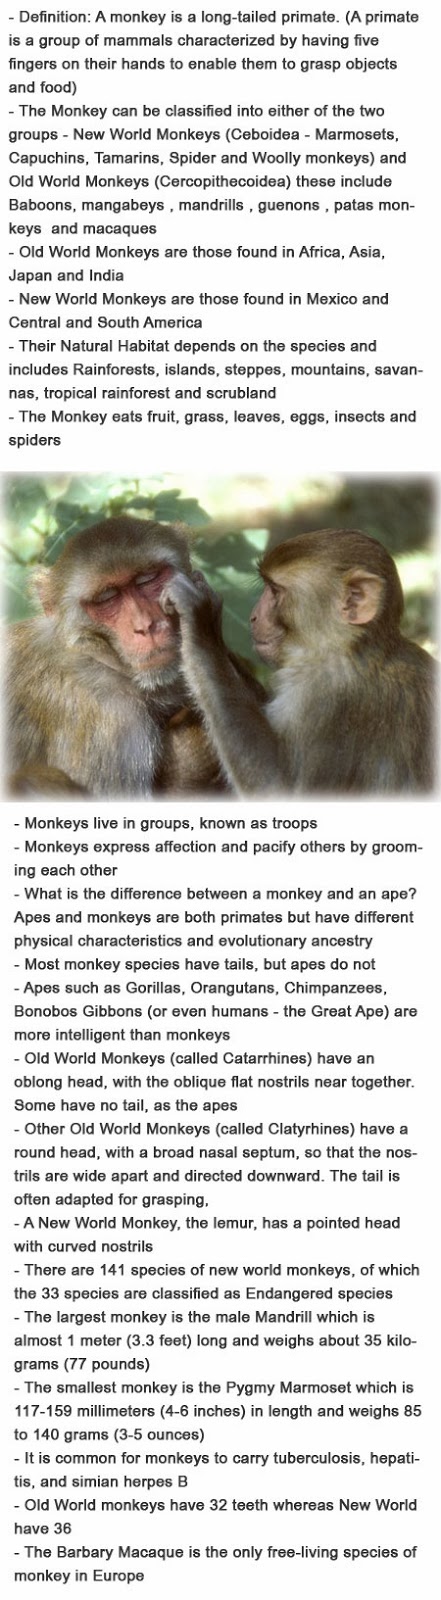 Facts on monkeys